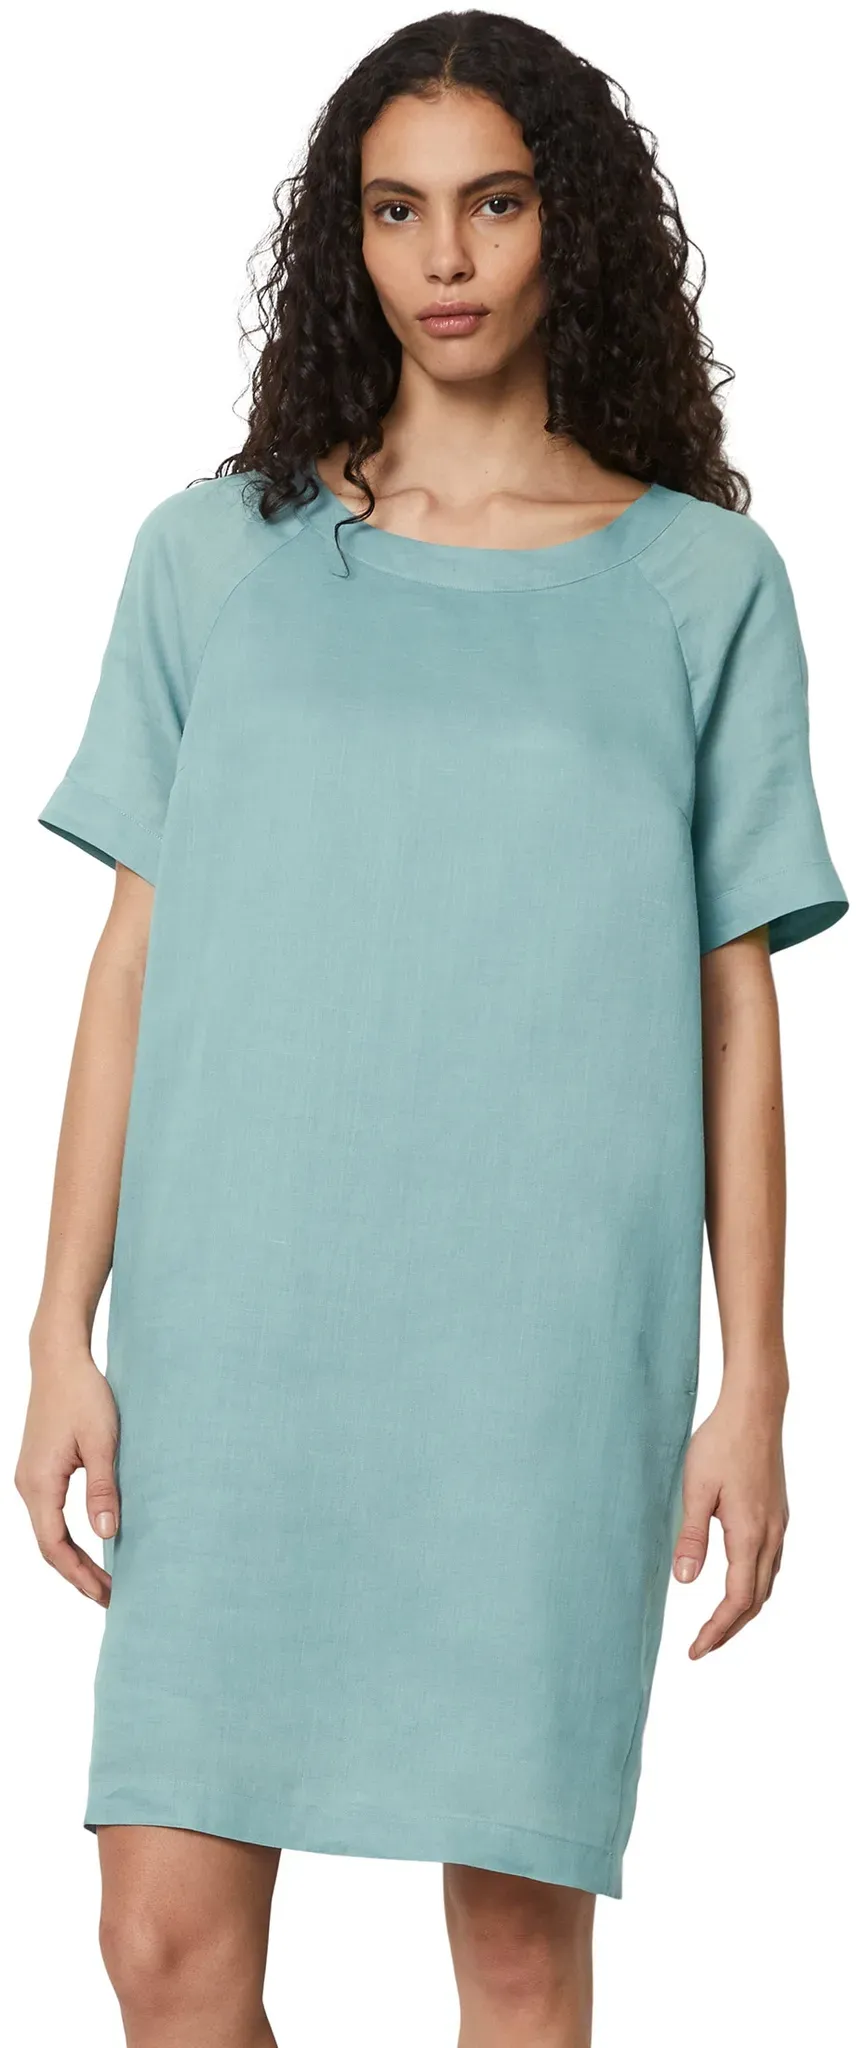 Sommerkleid MARC O'POLO "aus Premium-Ramie-Qualität" Gr. 44, Normalgrößen, grün Damen Kleider Freizeitkleider